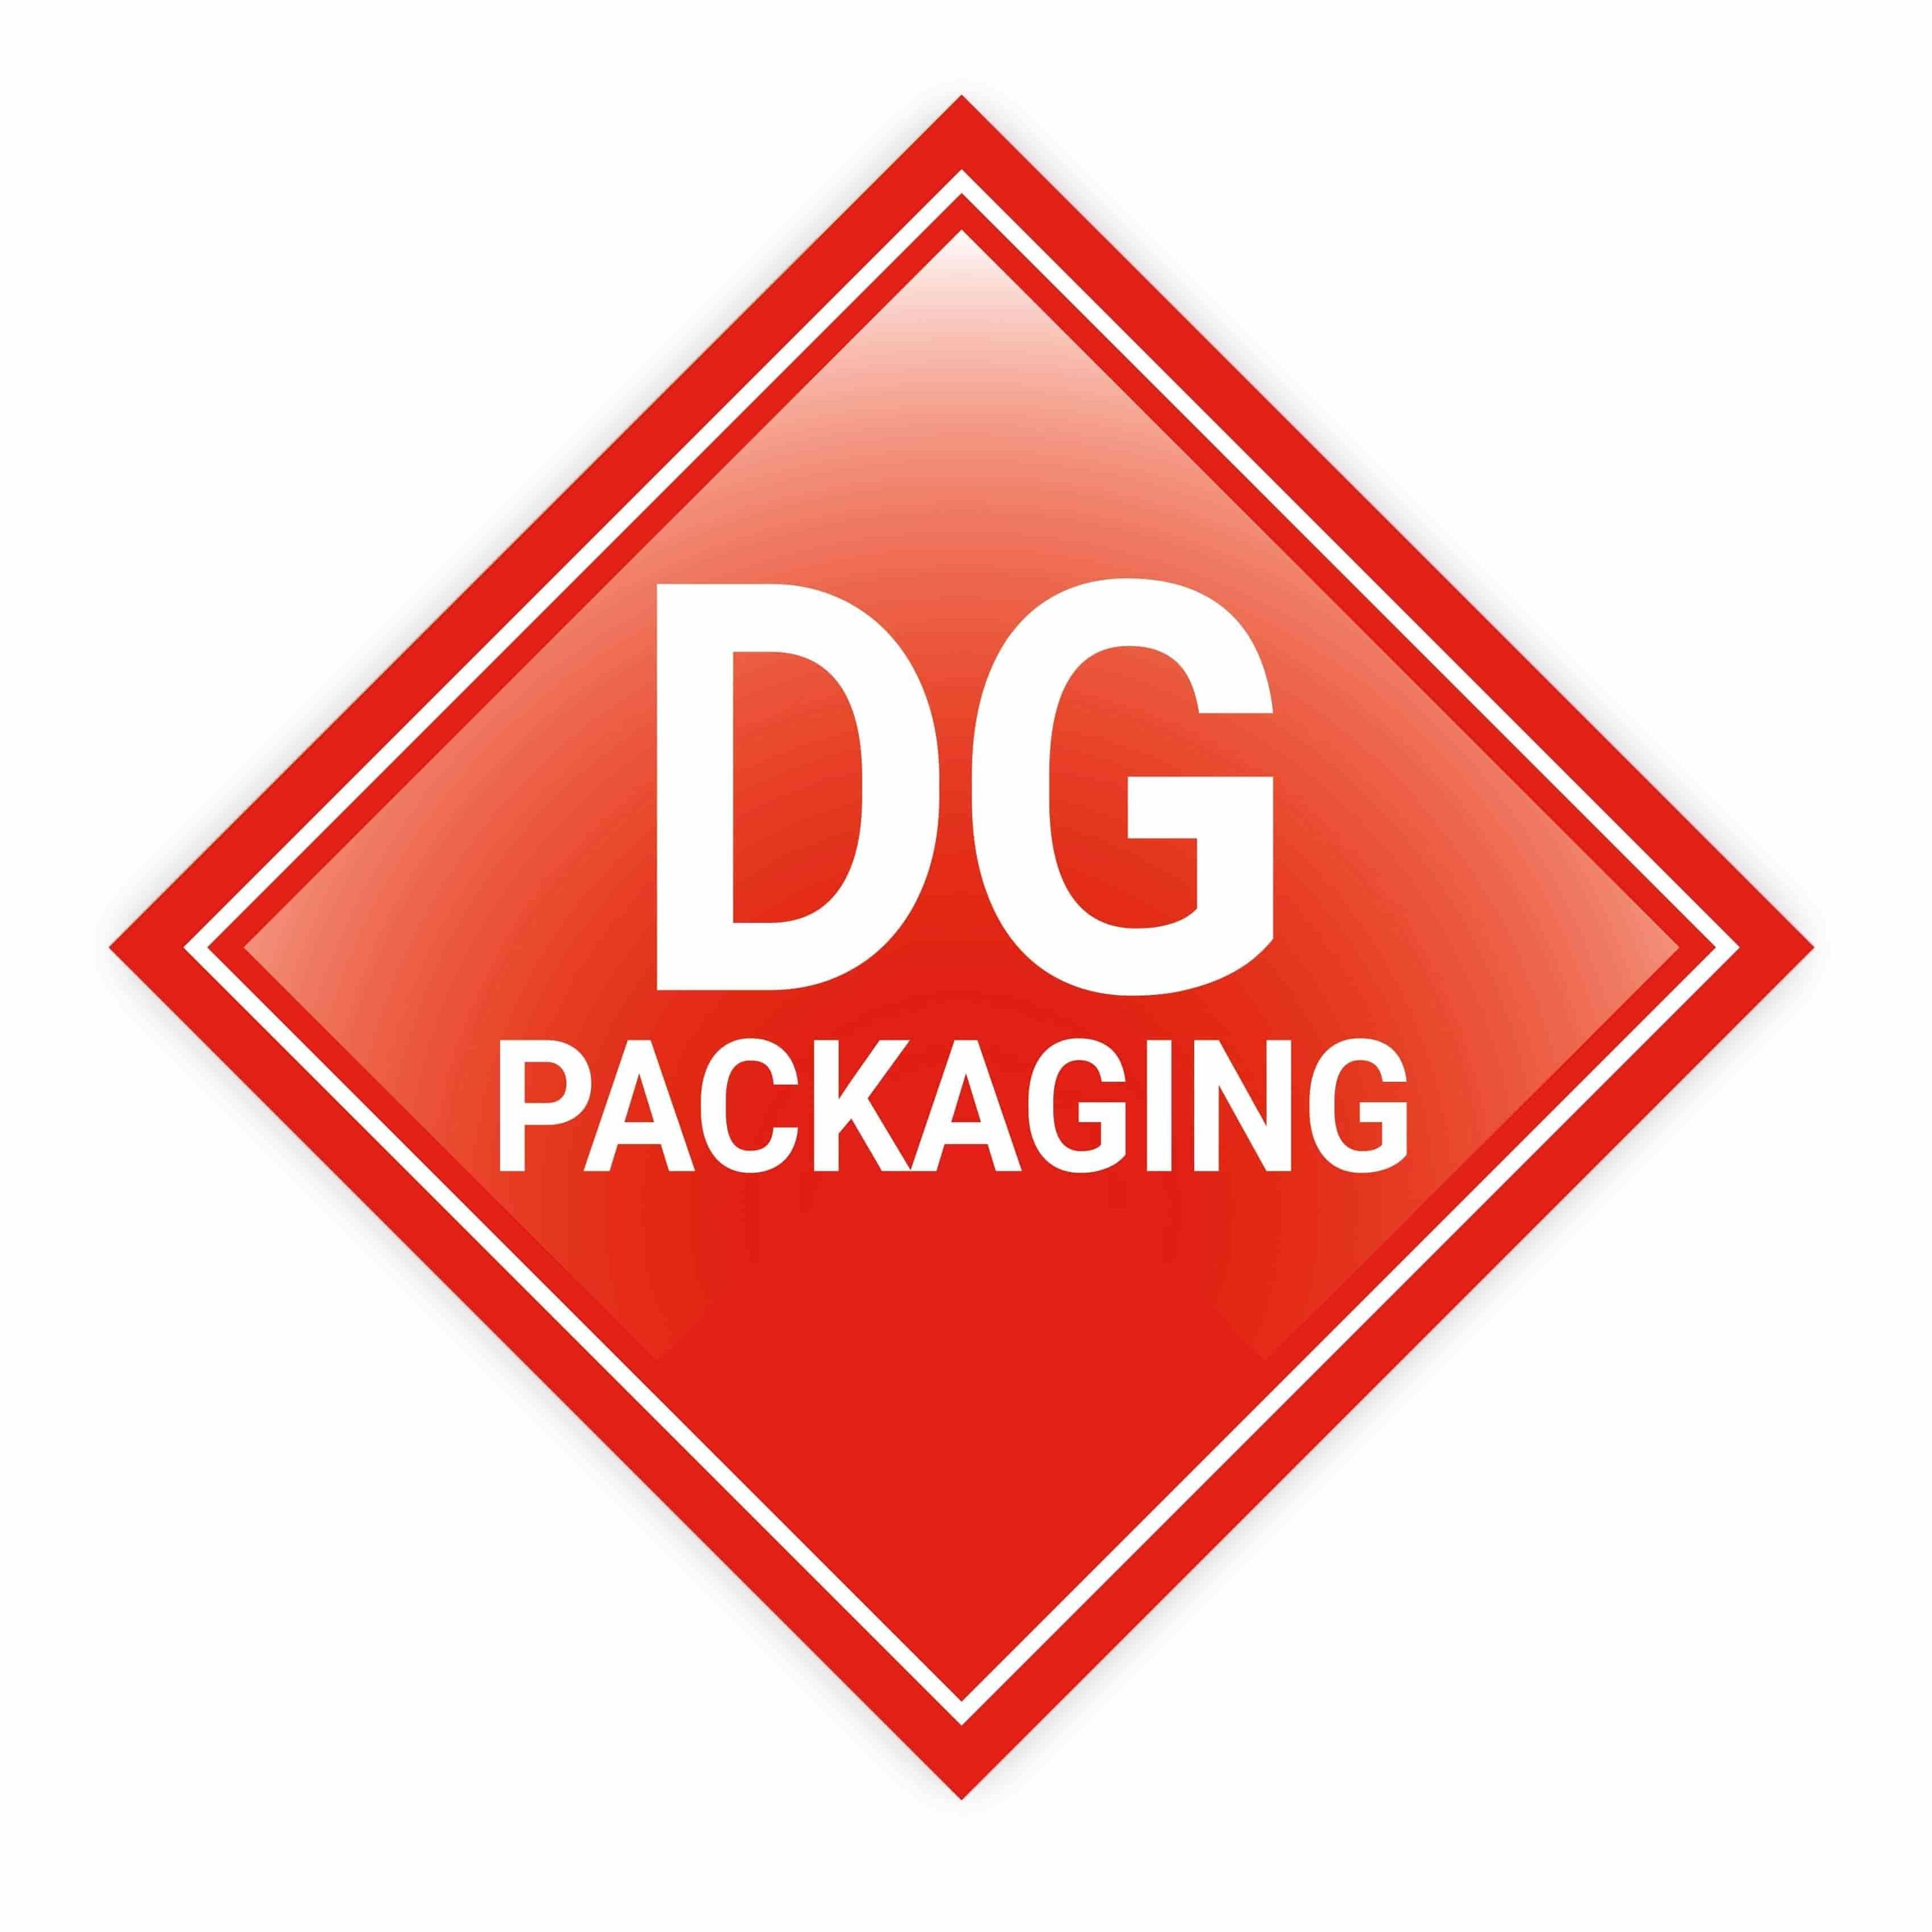 DG Packaging Group